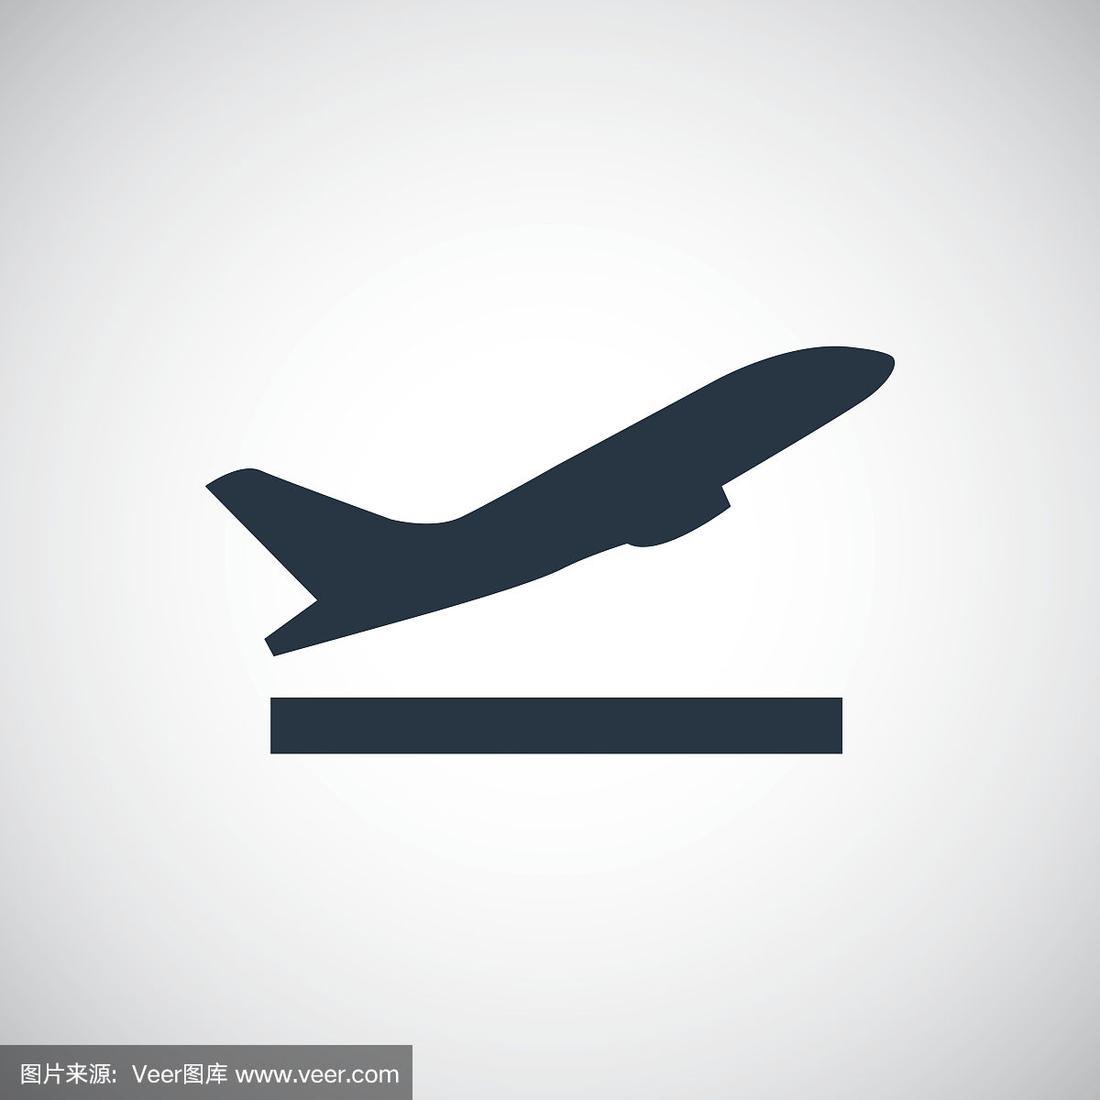 [飞机图标的聊天软件叫什么]纸飞机图标的聊天app叫什么